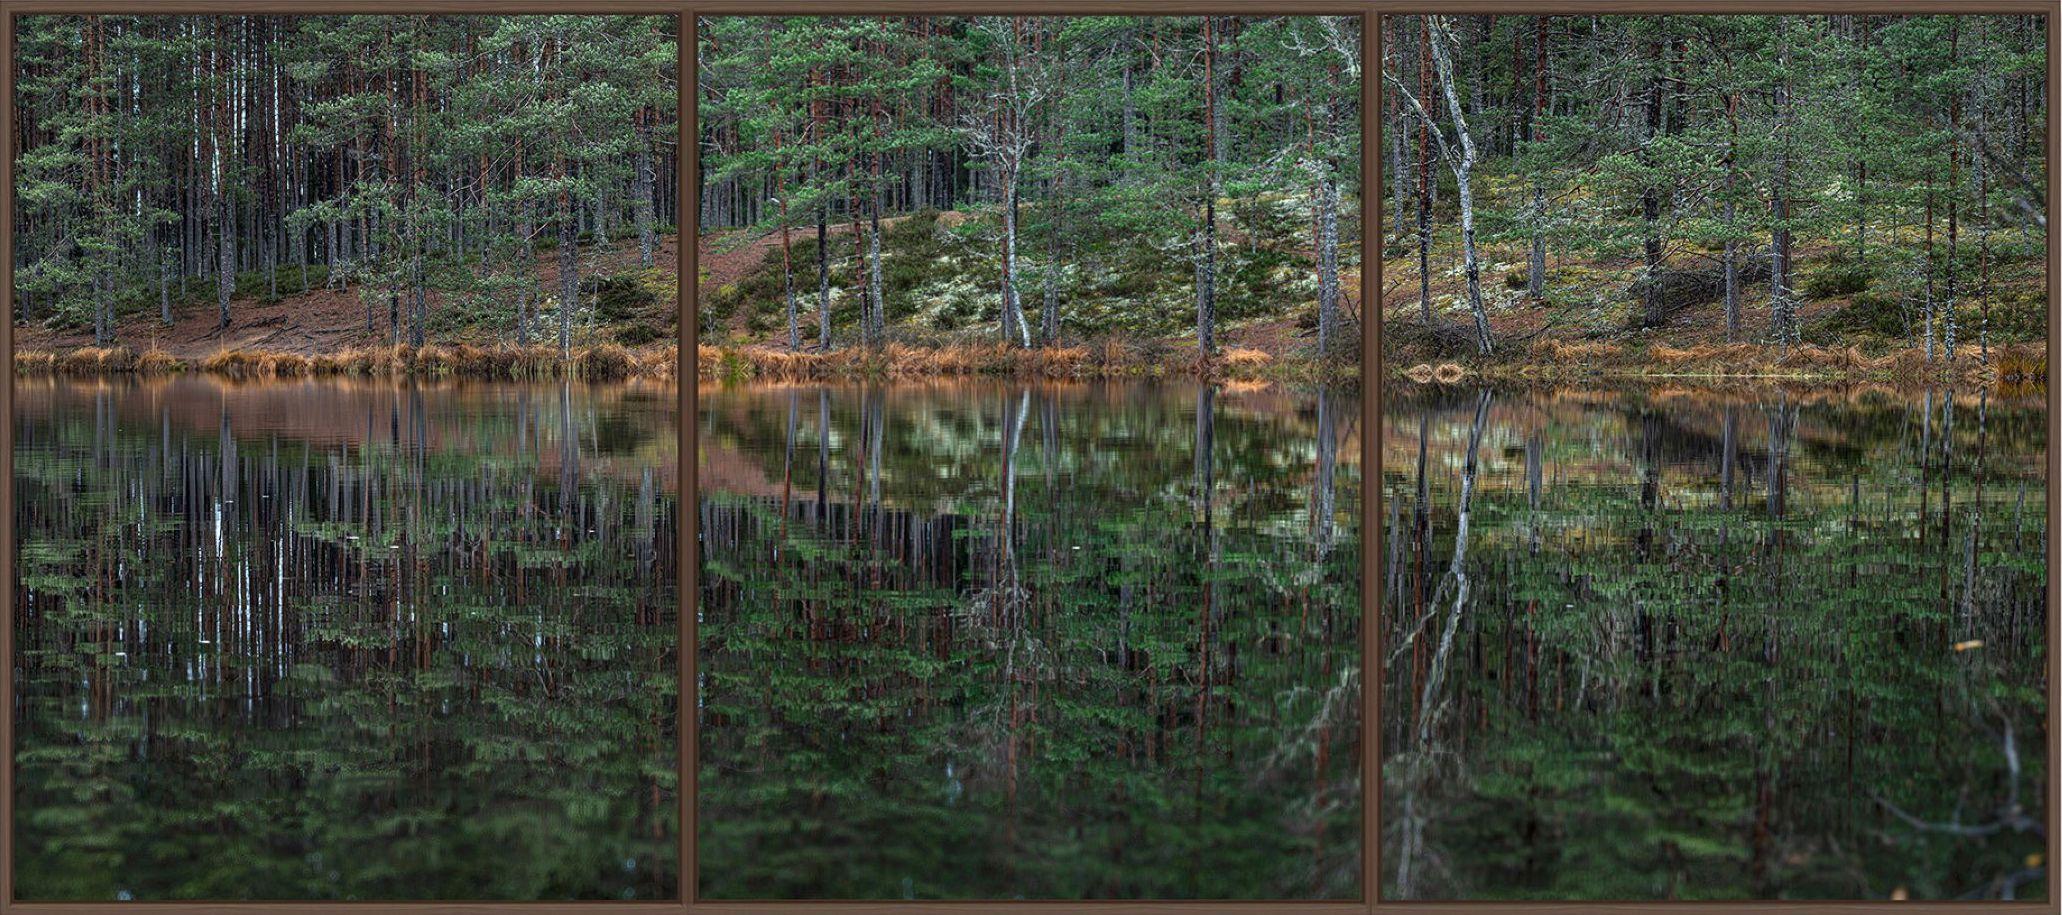 Deep Mirroring Forest 015 ist eine Fotografie des deutschen zeitgenössischen Künstlers Bernhard Lang in limitierter Auflage. 

Dieses Foto wird nur als ungerahmter Abzug verkauft. Sie ist in 5 Größen erhältlich:
*40 × 90 cm (15,7 × 35,4 in),